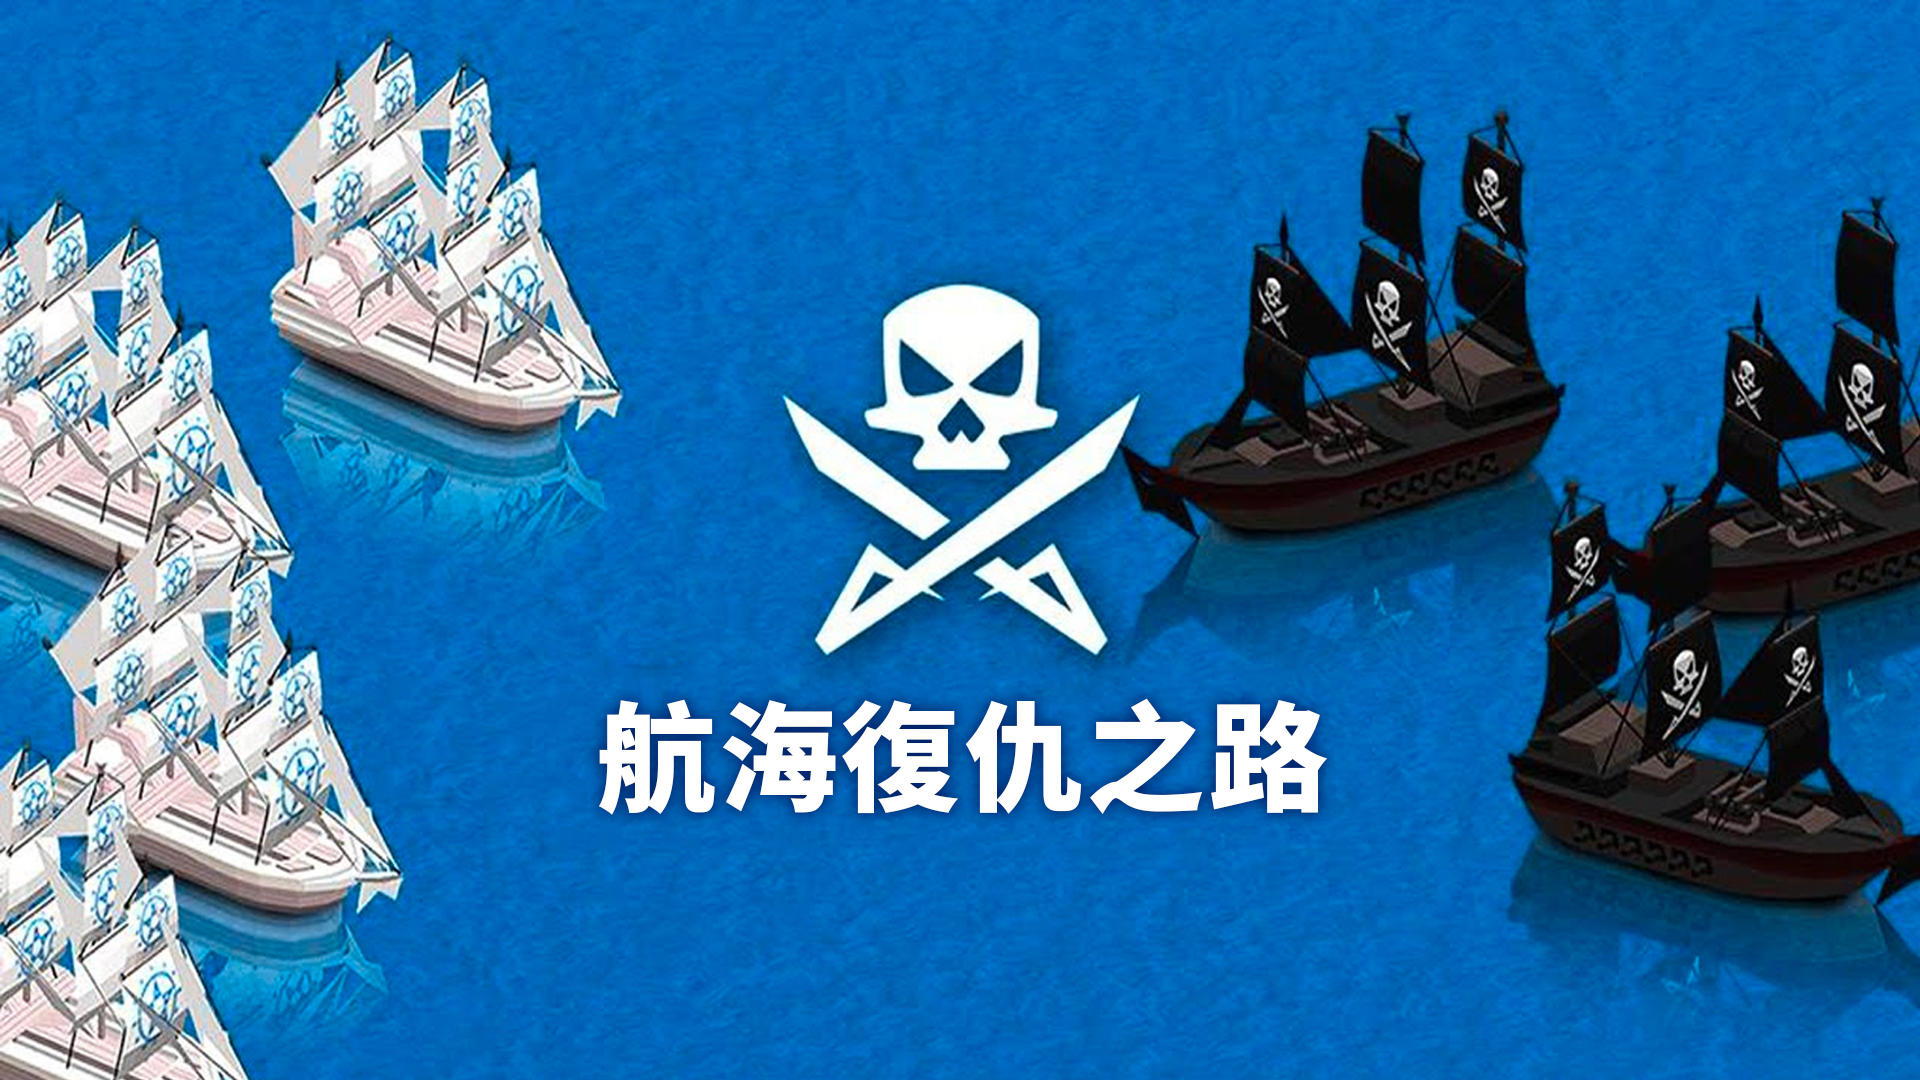 Banner of 航海復仇之路 1.16.2